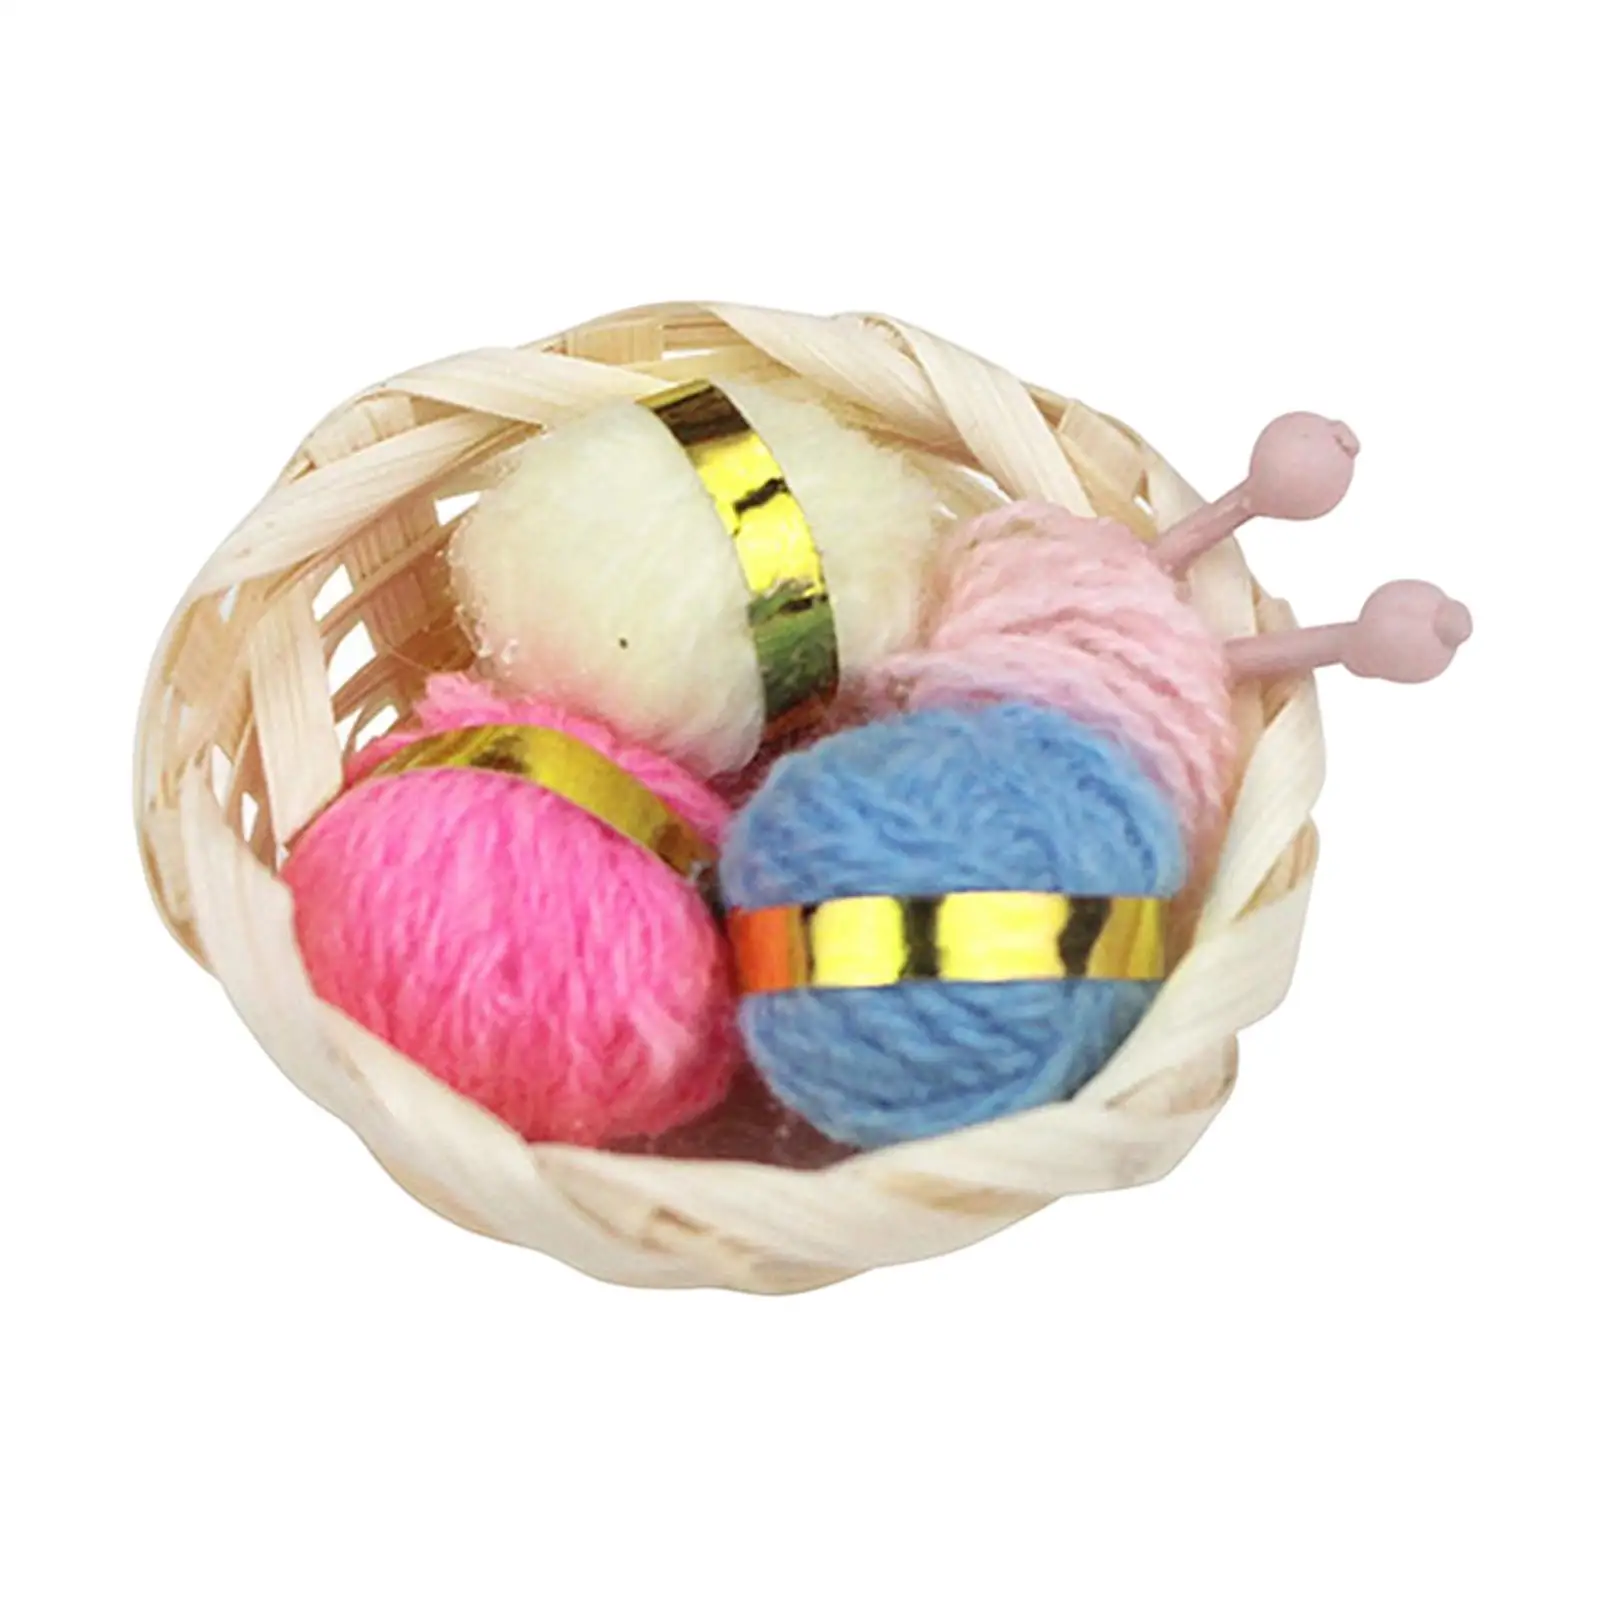 1/12 Dollhouse Woolen Yarn in Basket Craft Project Simulation Craft Yarn for Dollhouse Decor Desktop Ornaments Pretend Toy